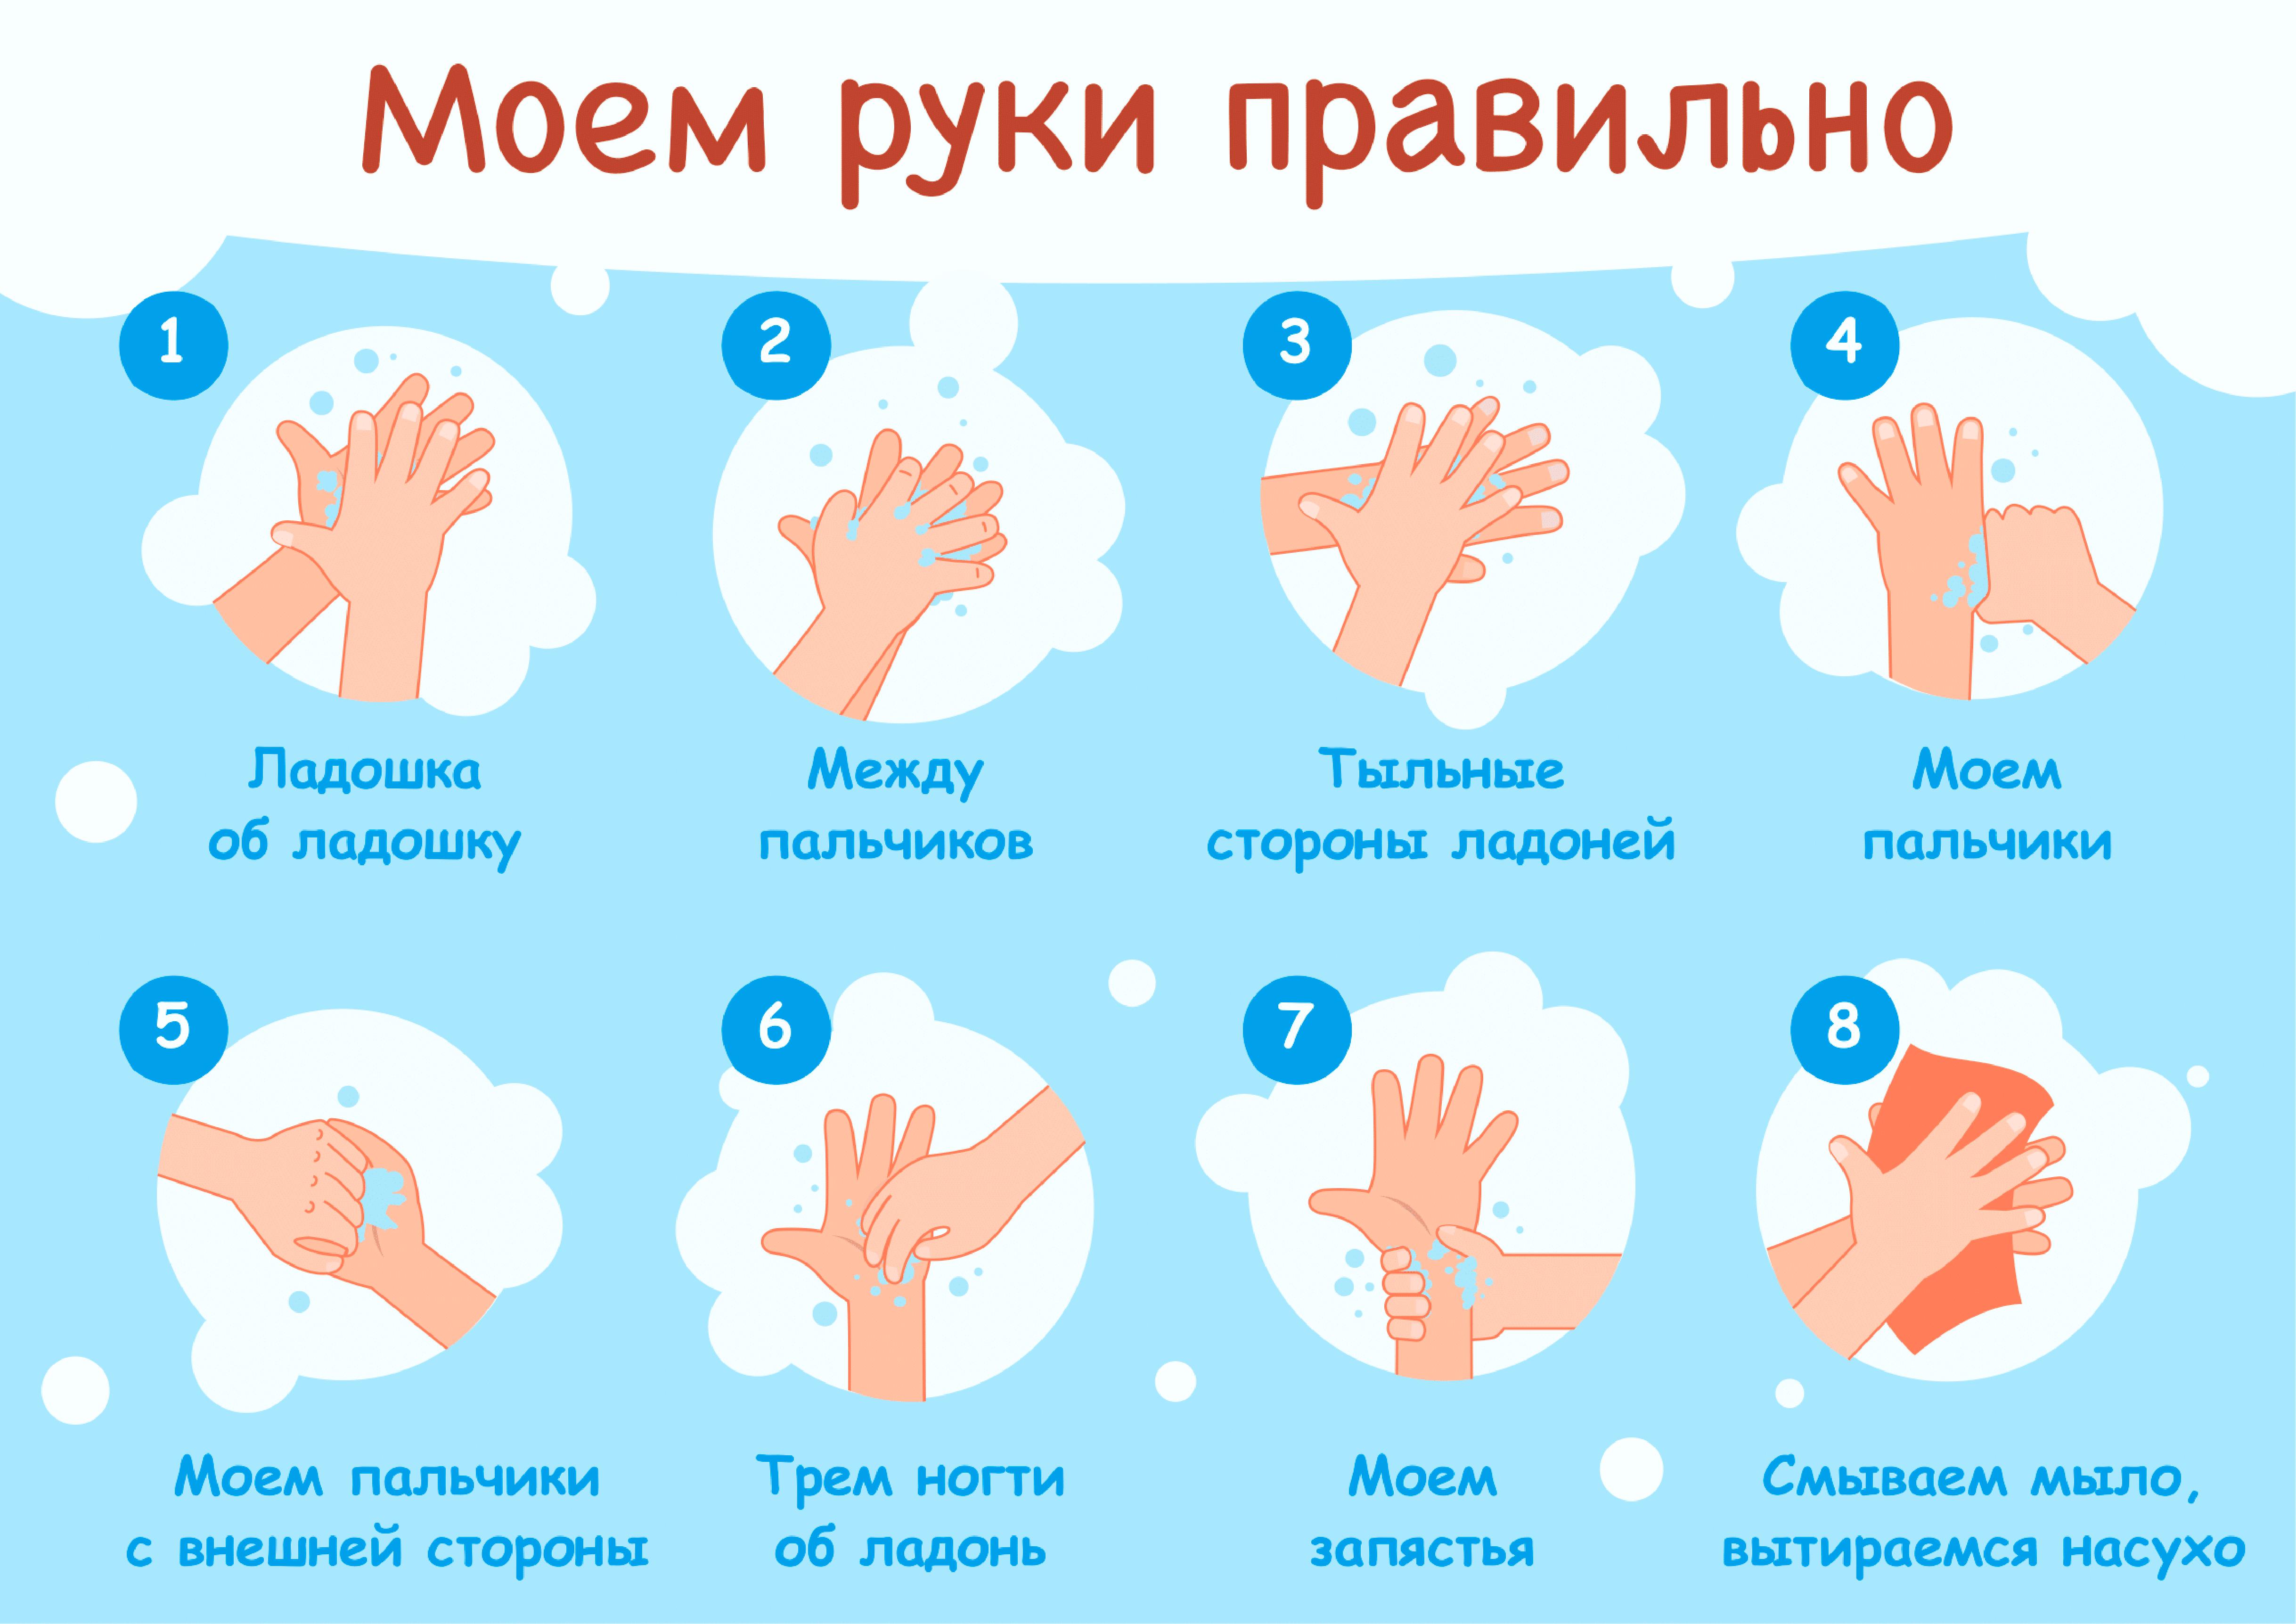 Картинки мытье рук в детском саду. Мытьё рук. Алгоритм мытья рук. Как правильн Оымт ьруки. КККМ правильн омыть руки. Мытье рук дошкольников.